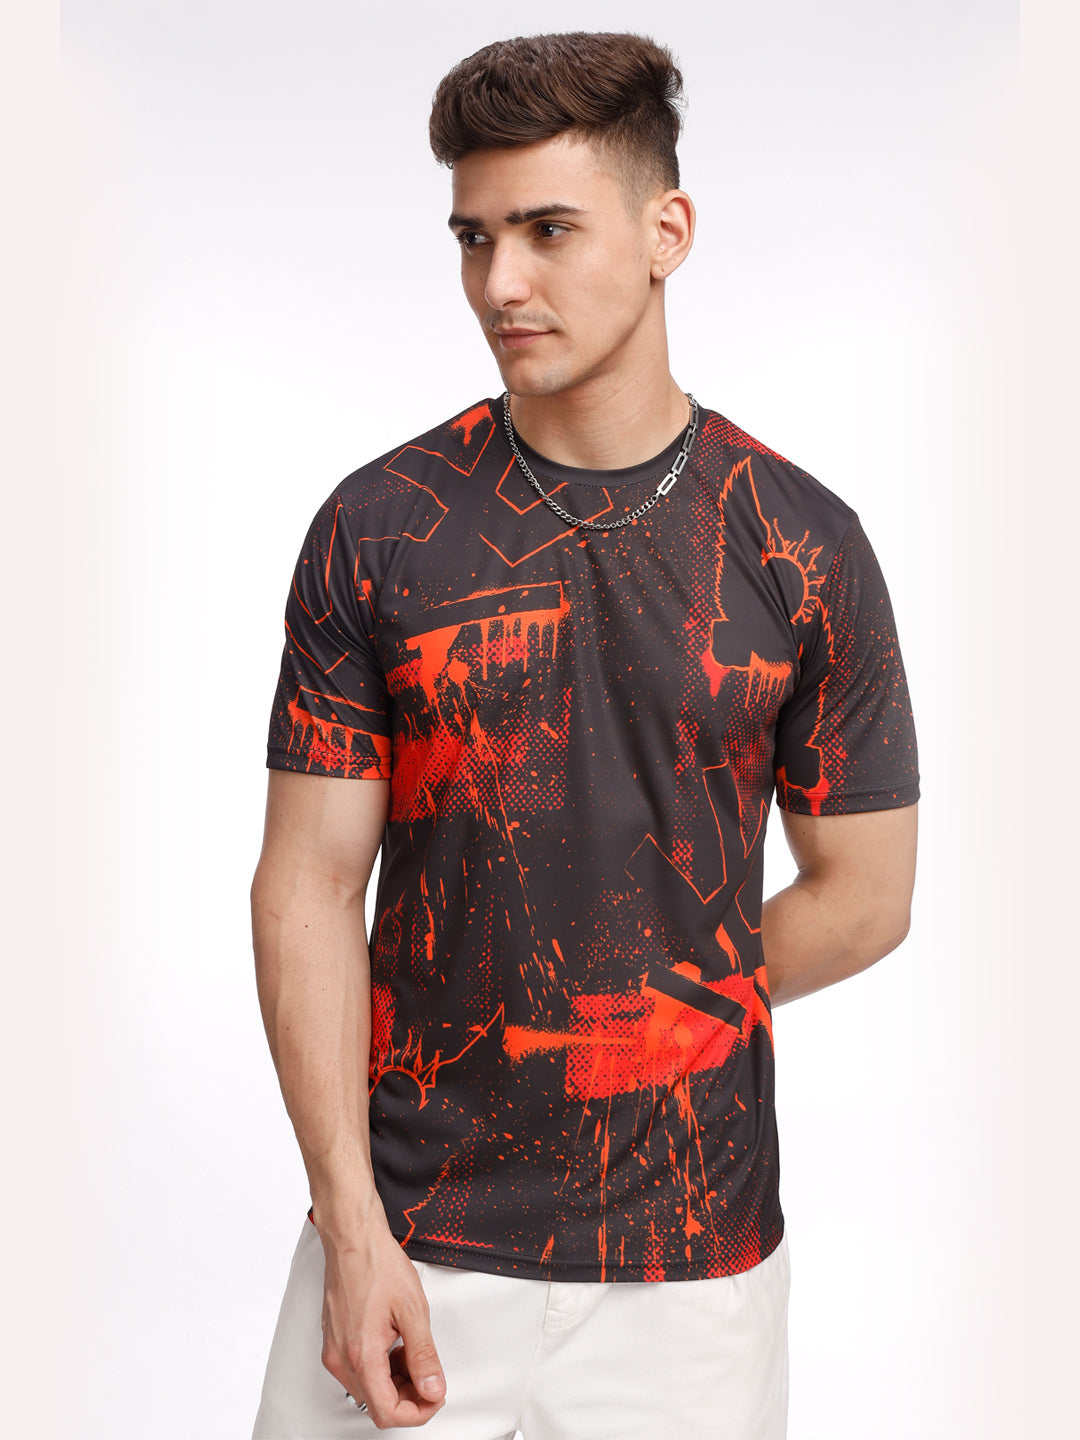 Inferno Splash SRH Fan T-Shirt